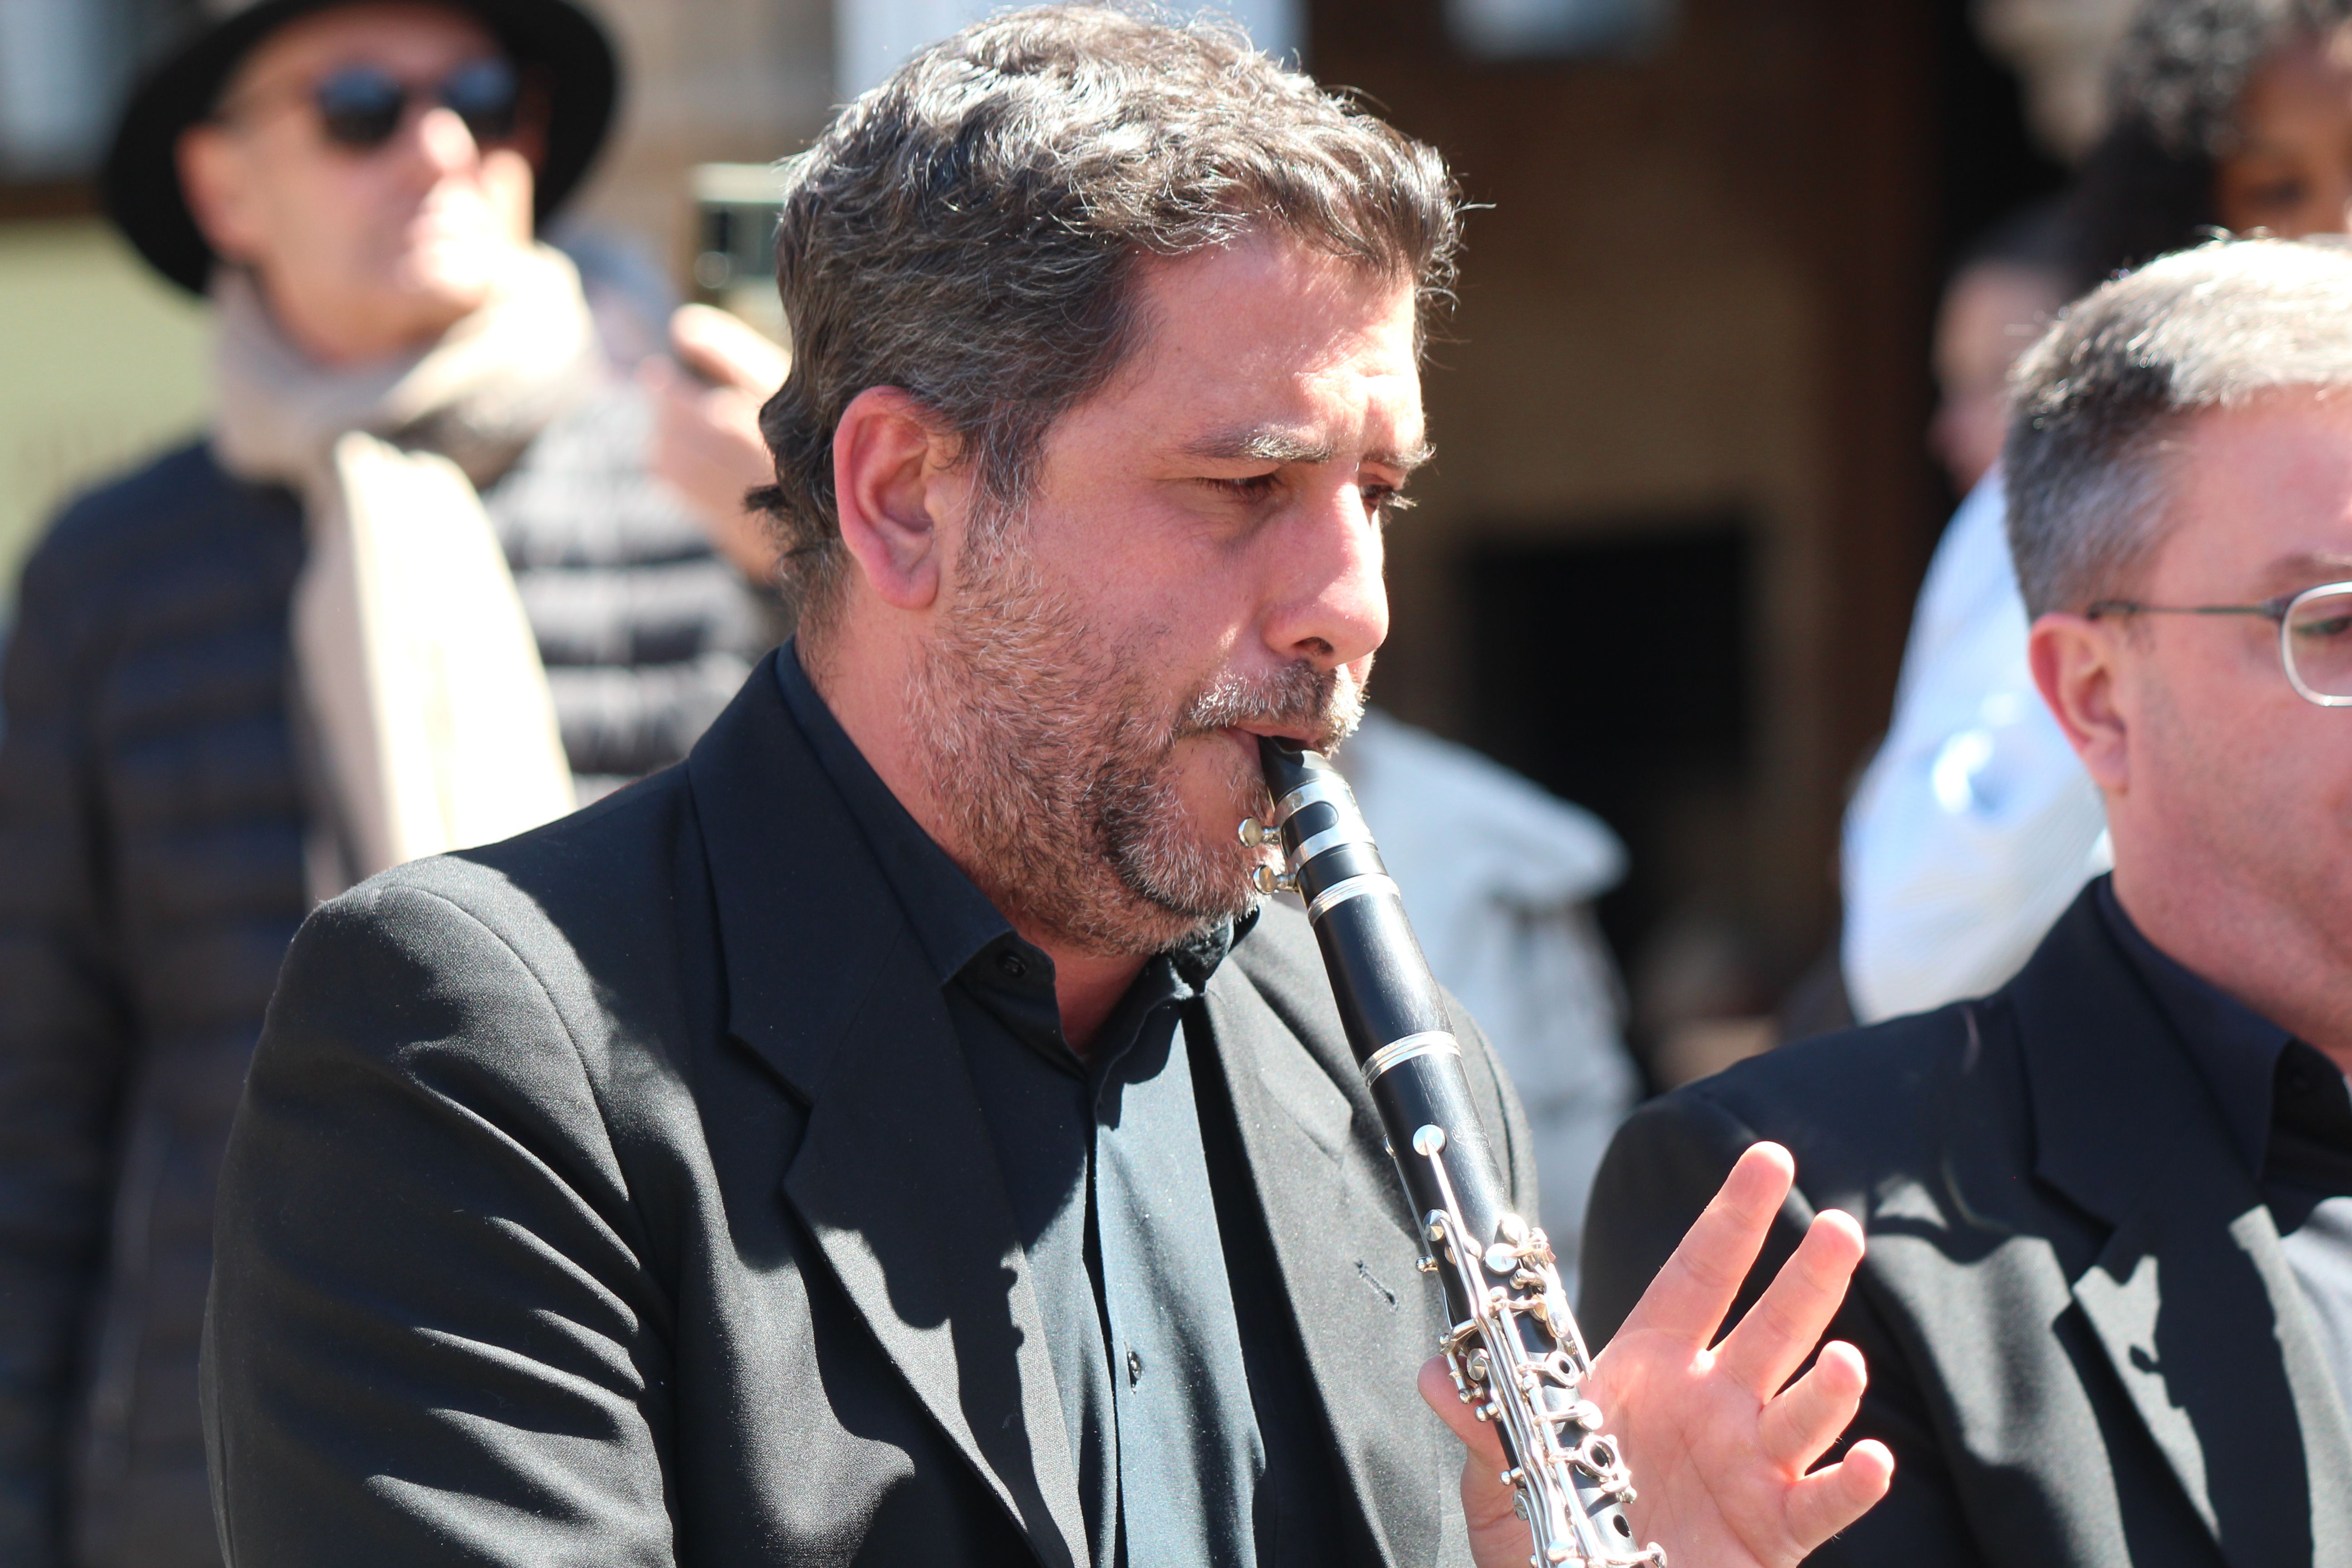  La Banda Municipal de Música, dirigida por Mario Vercher Grau, ofrece en la Plaza Mayor un concierto.